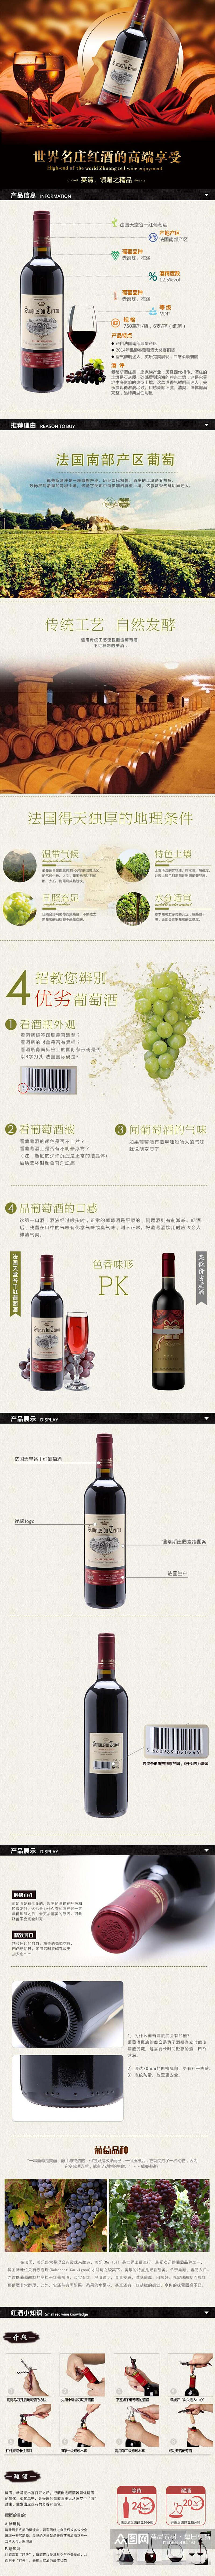 世界名庄红酒的高端享受白酒手机版详情页素材